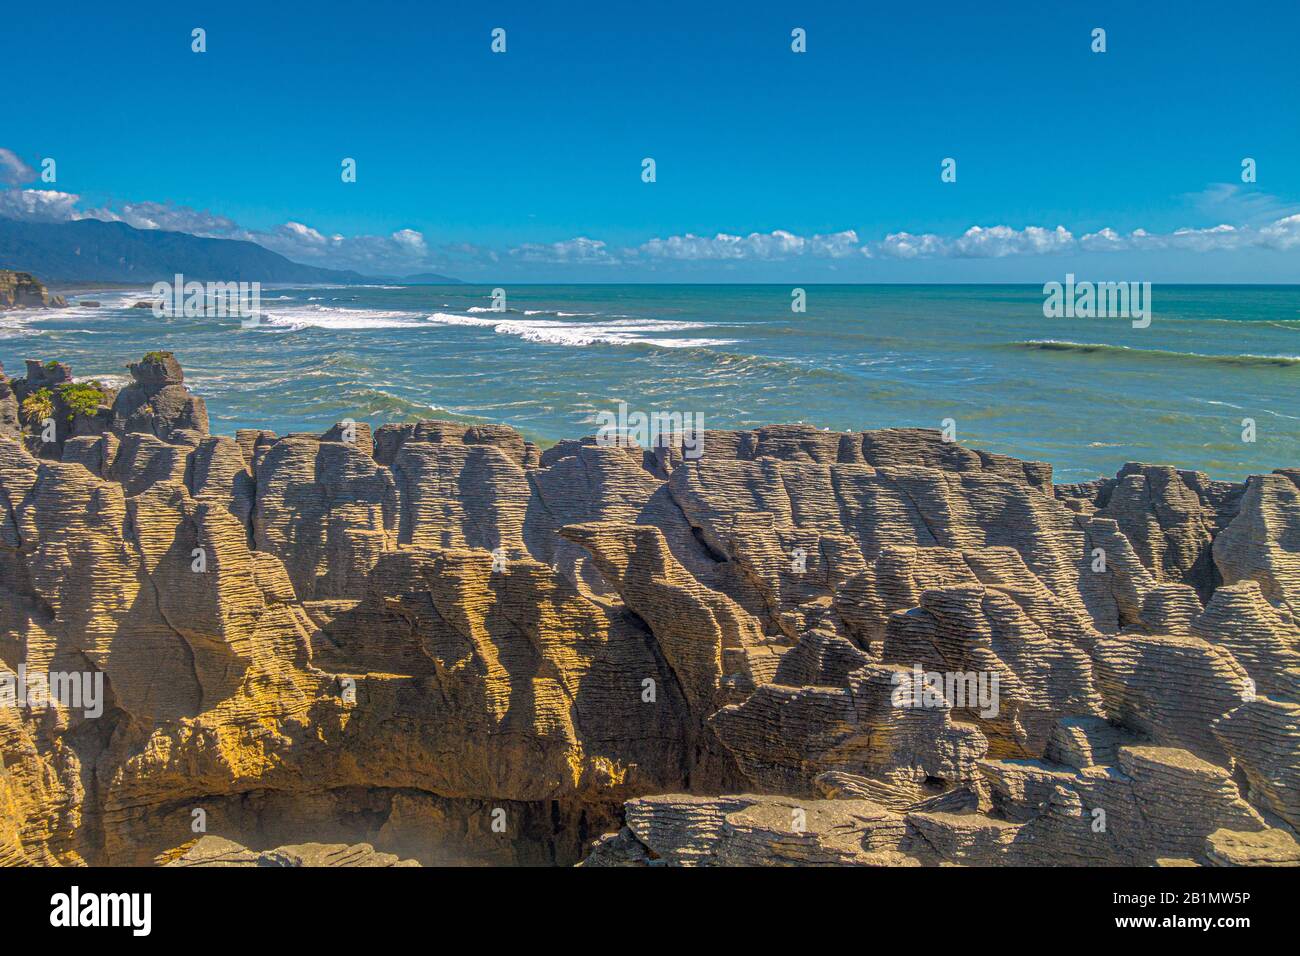 Sedimentäre Felsen an der Küste der Tasmanischen See, Neuseeland. Lizenzfreies Foto. Stockfoto